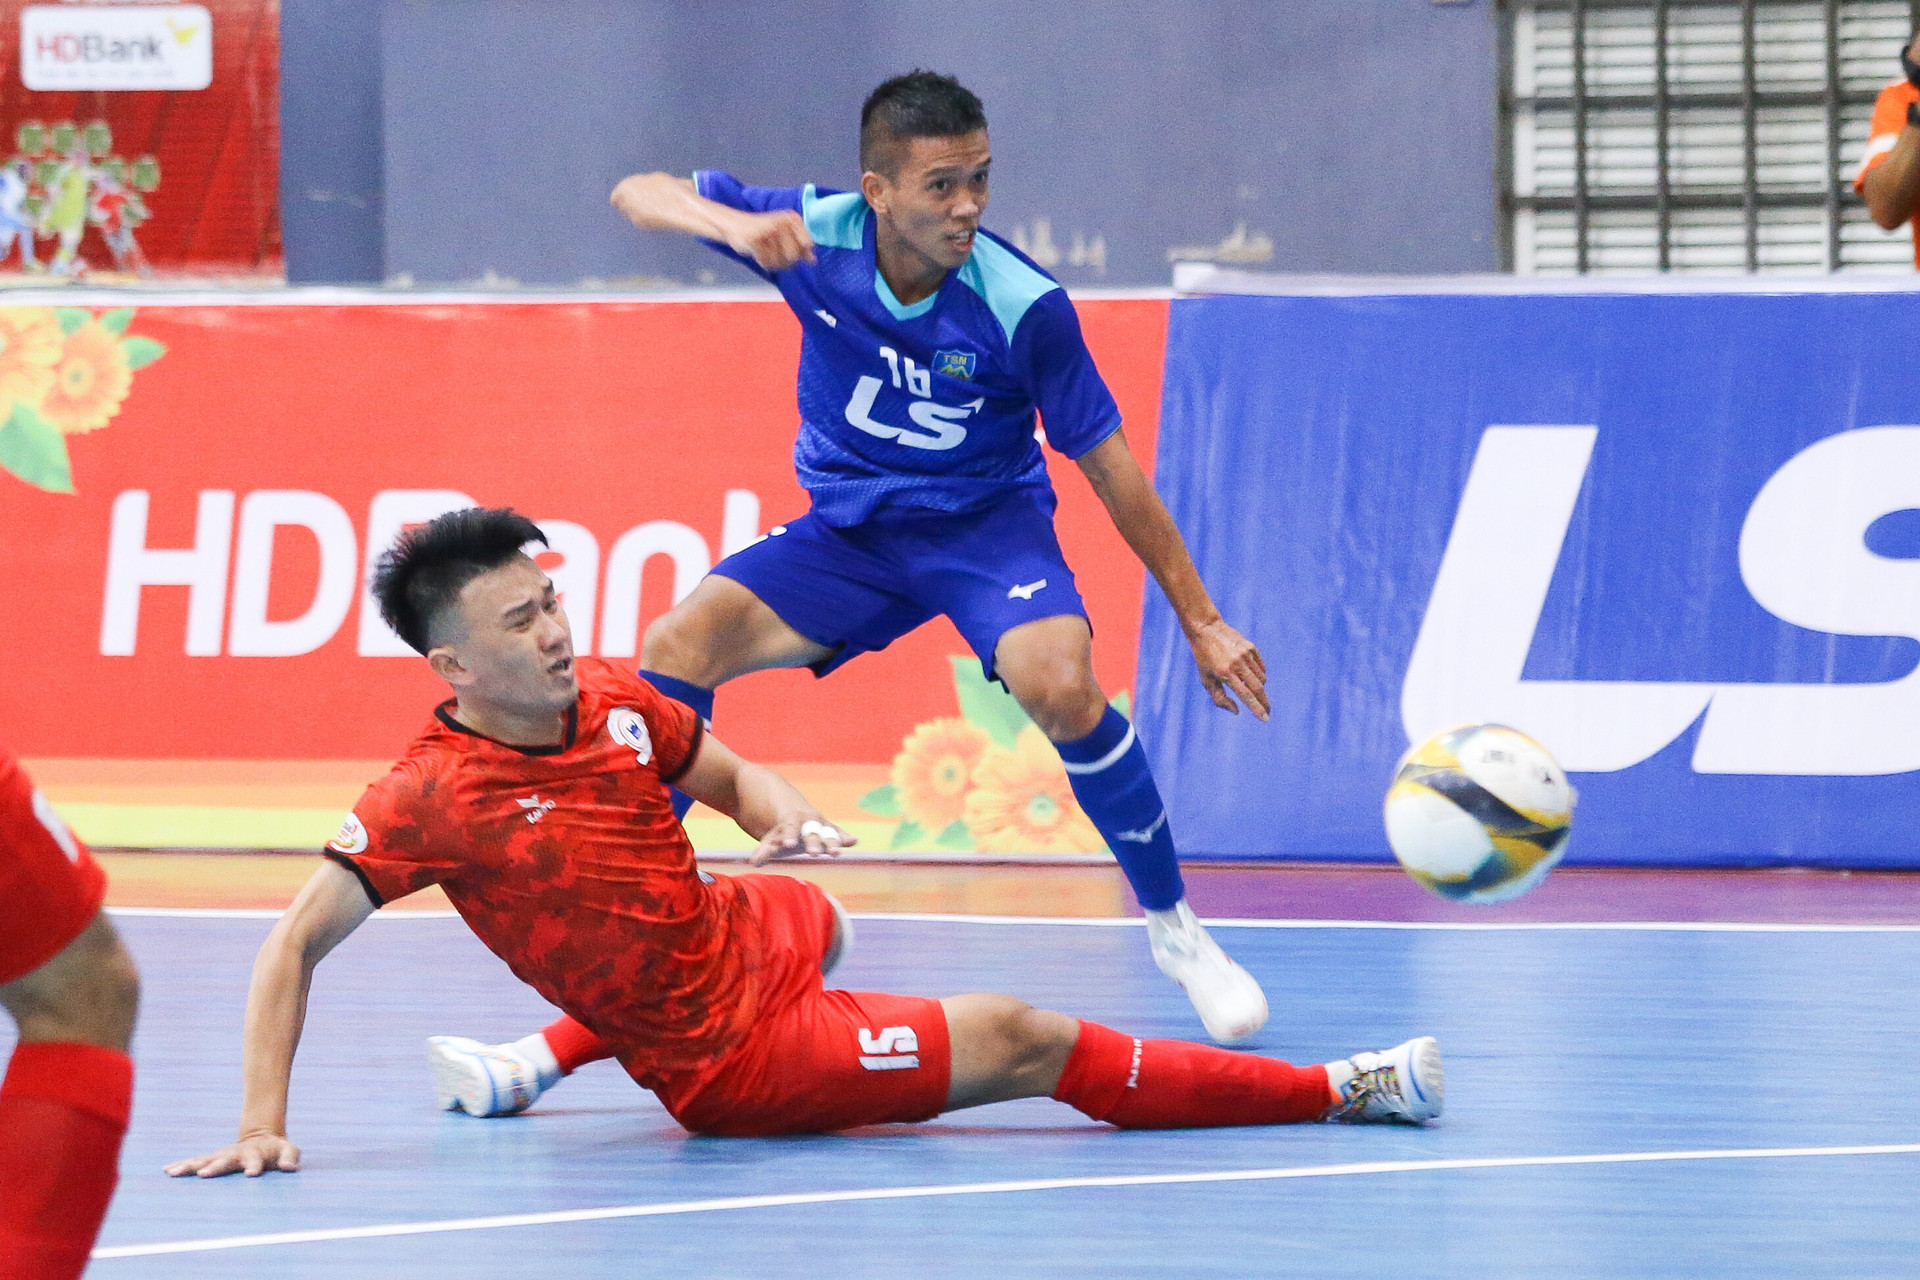 Futsal HDBank VĐQG 2023: Thái Sơn Nam thoát thua, Sahako đứng đầu bảng - 2